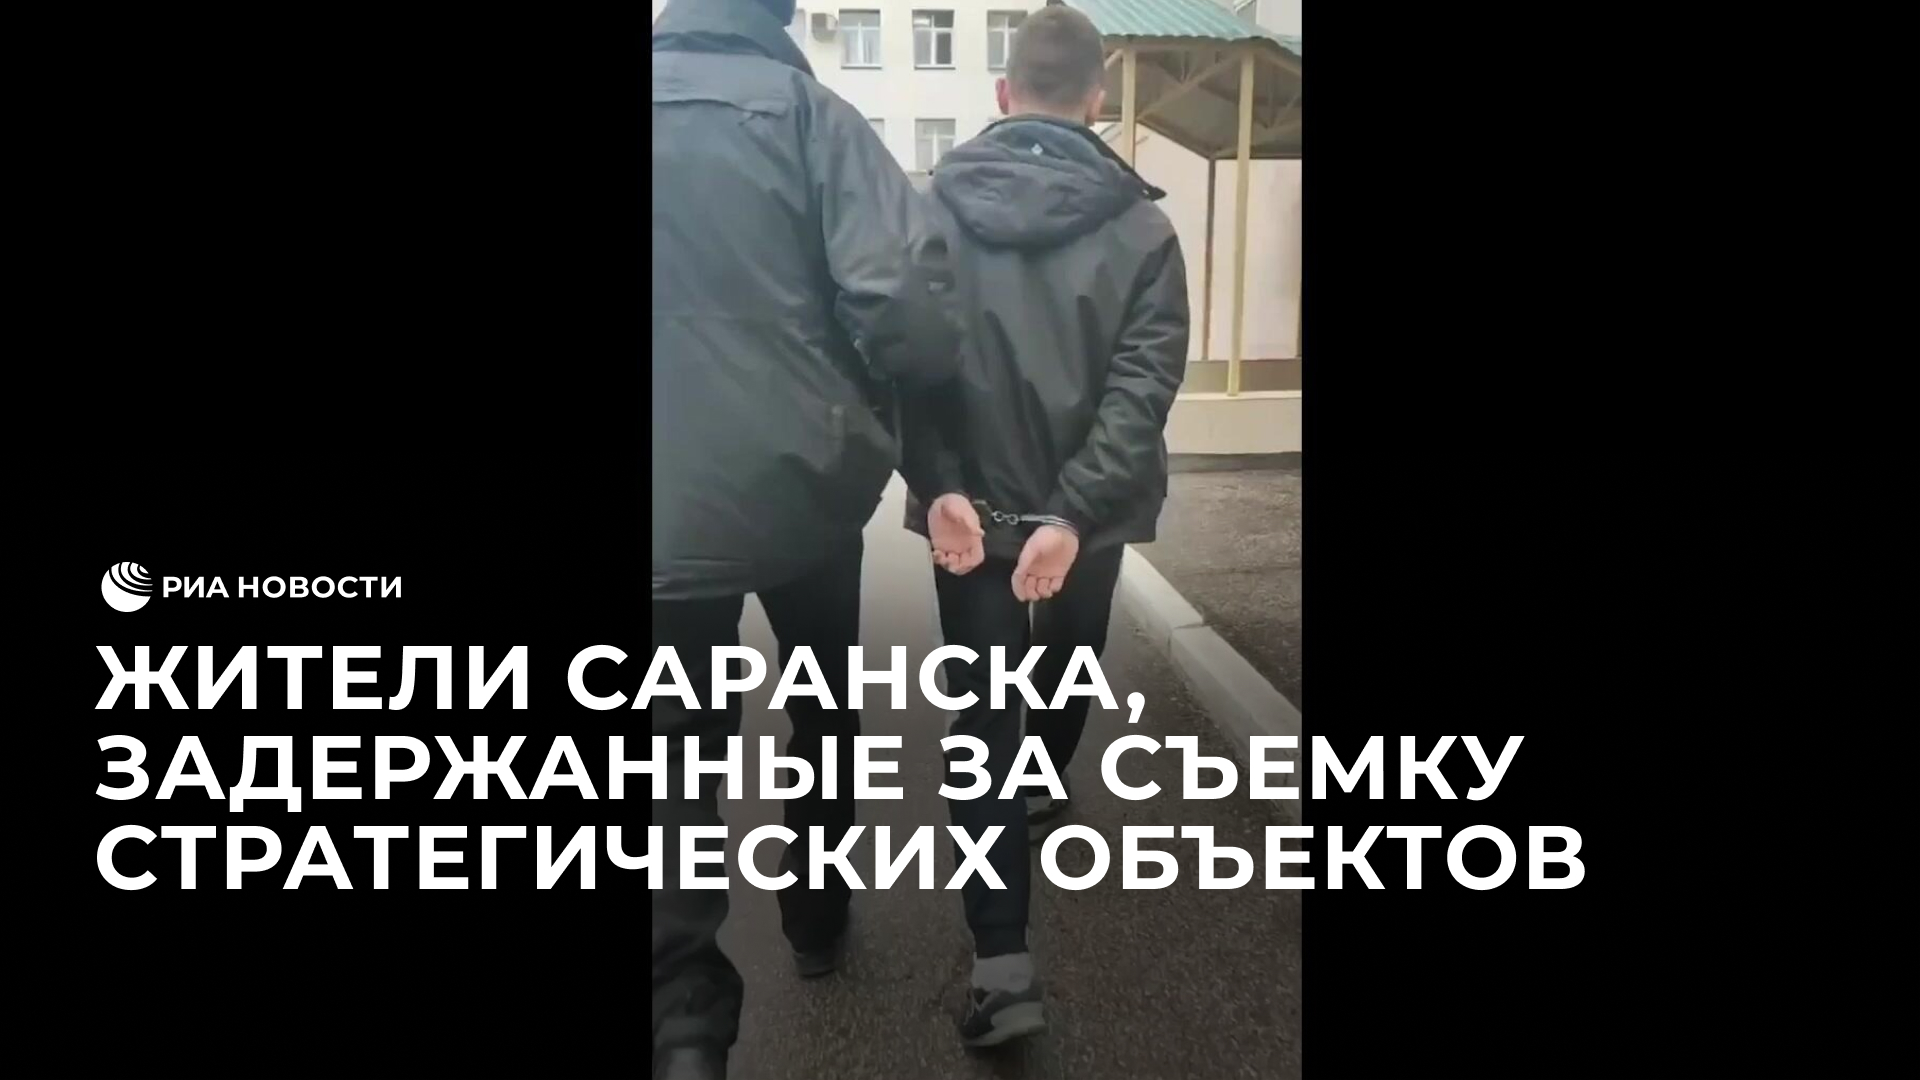 Жители Саранска, задержанные за съемку стратегических объектов